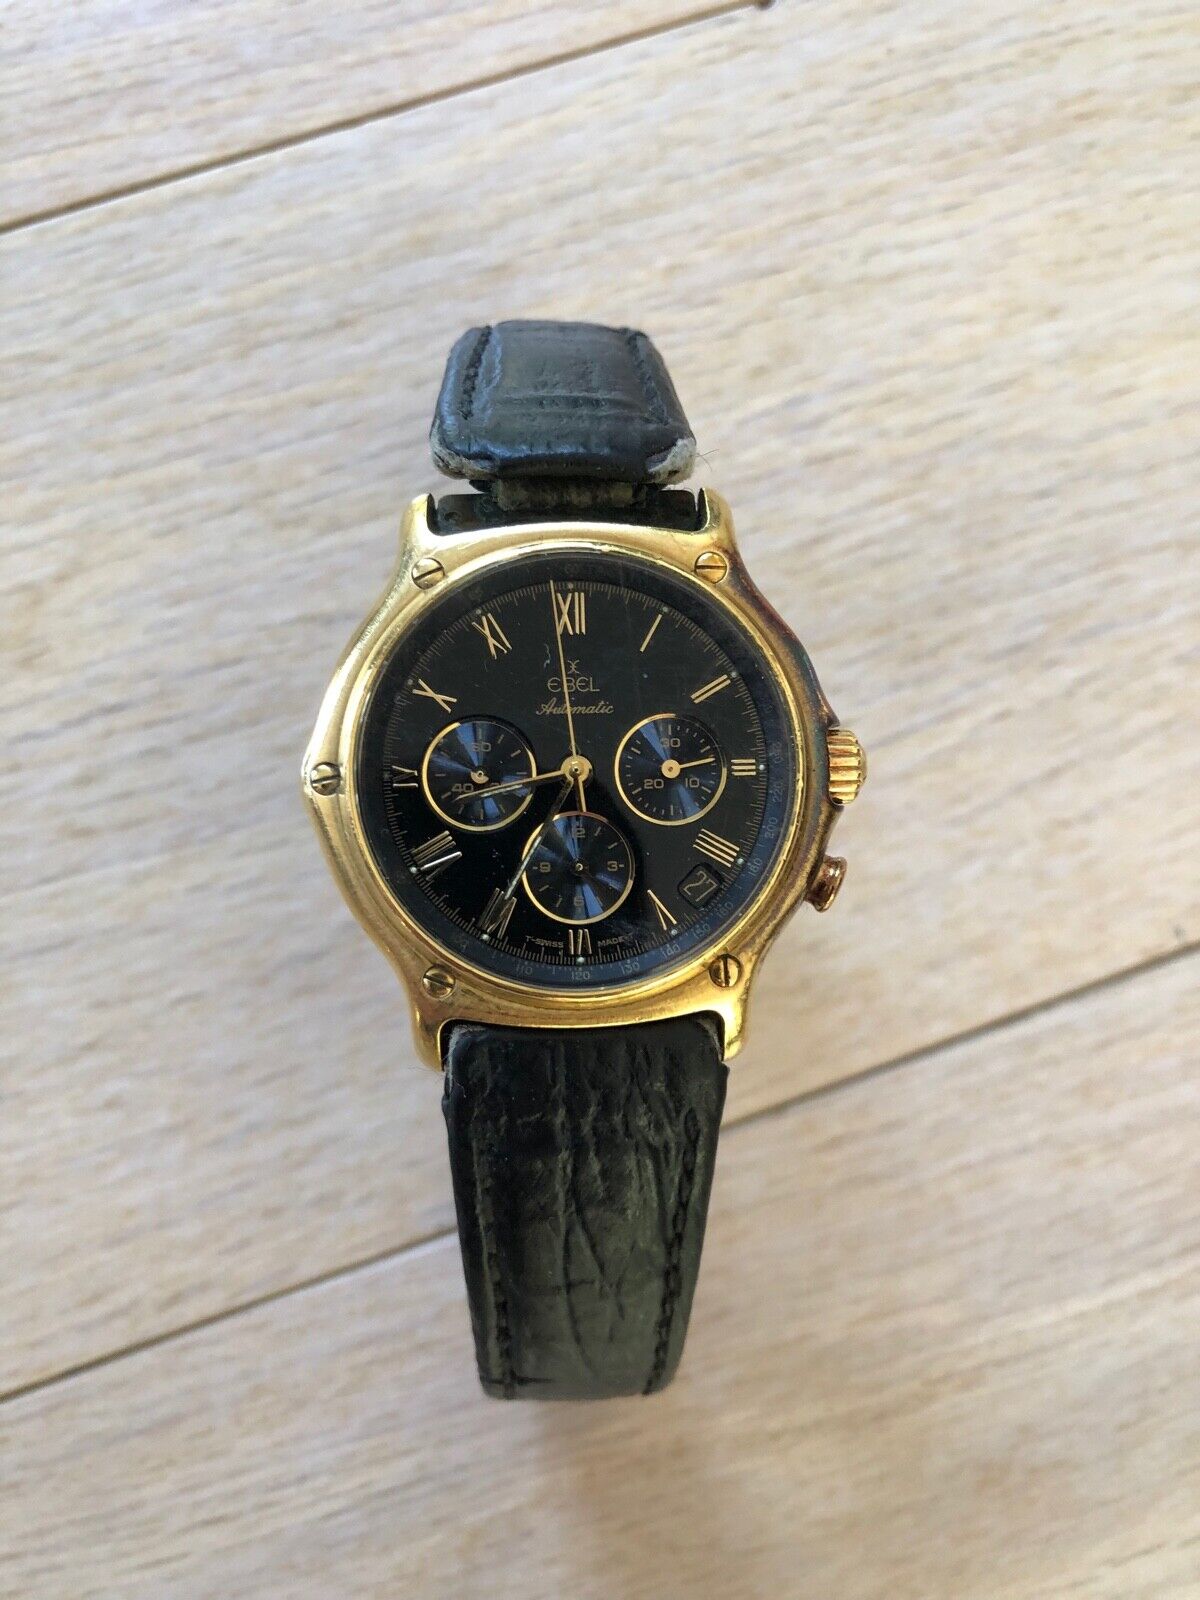 Ebel 1911 18K Yellow Gold Automatic Chronograph Wrist Watch | eBay